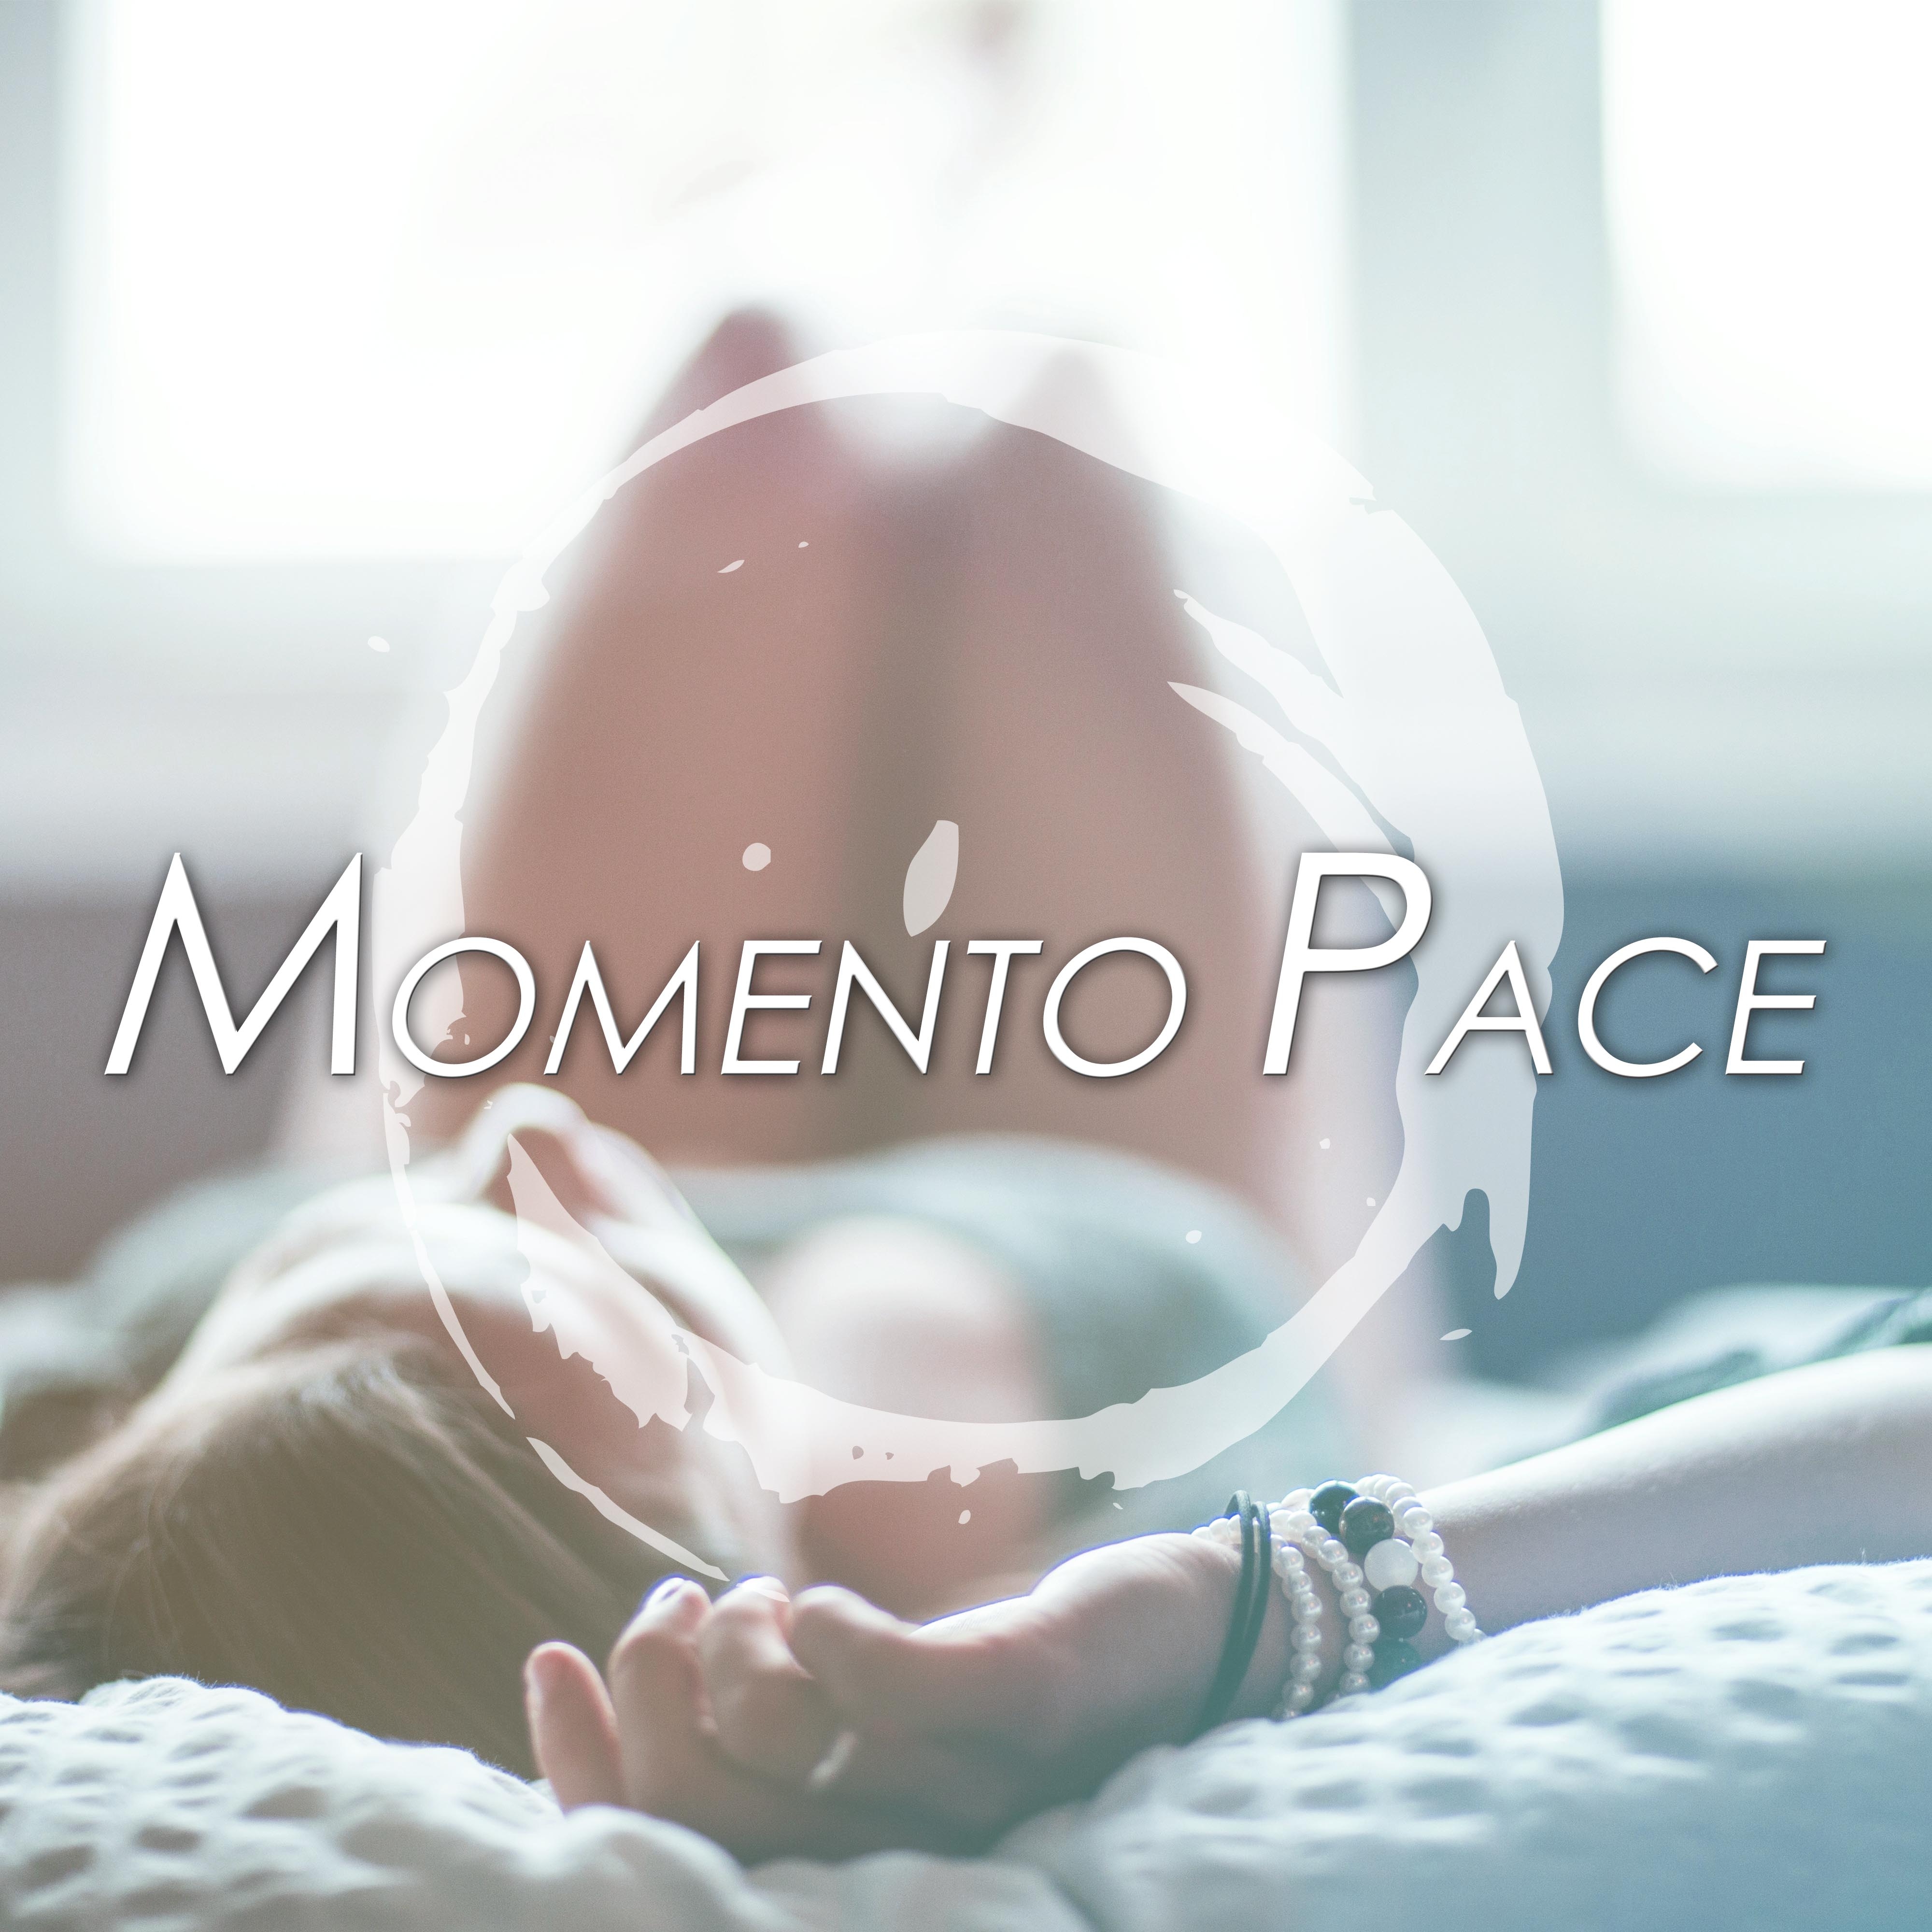 Momento Pace: Musica Romantica con Suoni della Natura per sciogliere Tensioni e diminuire Stress portando Serenità e Calma nella Vita